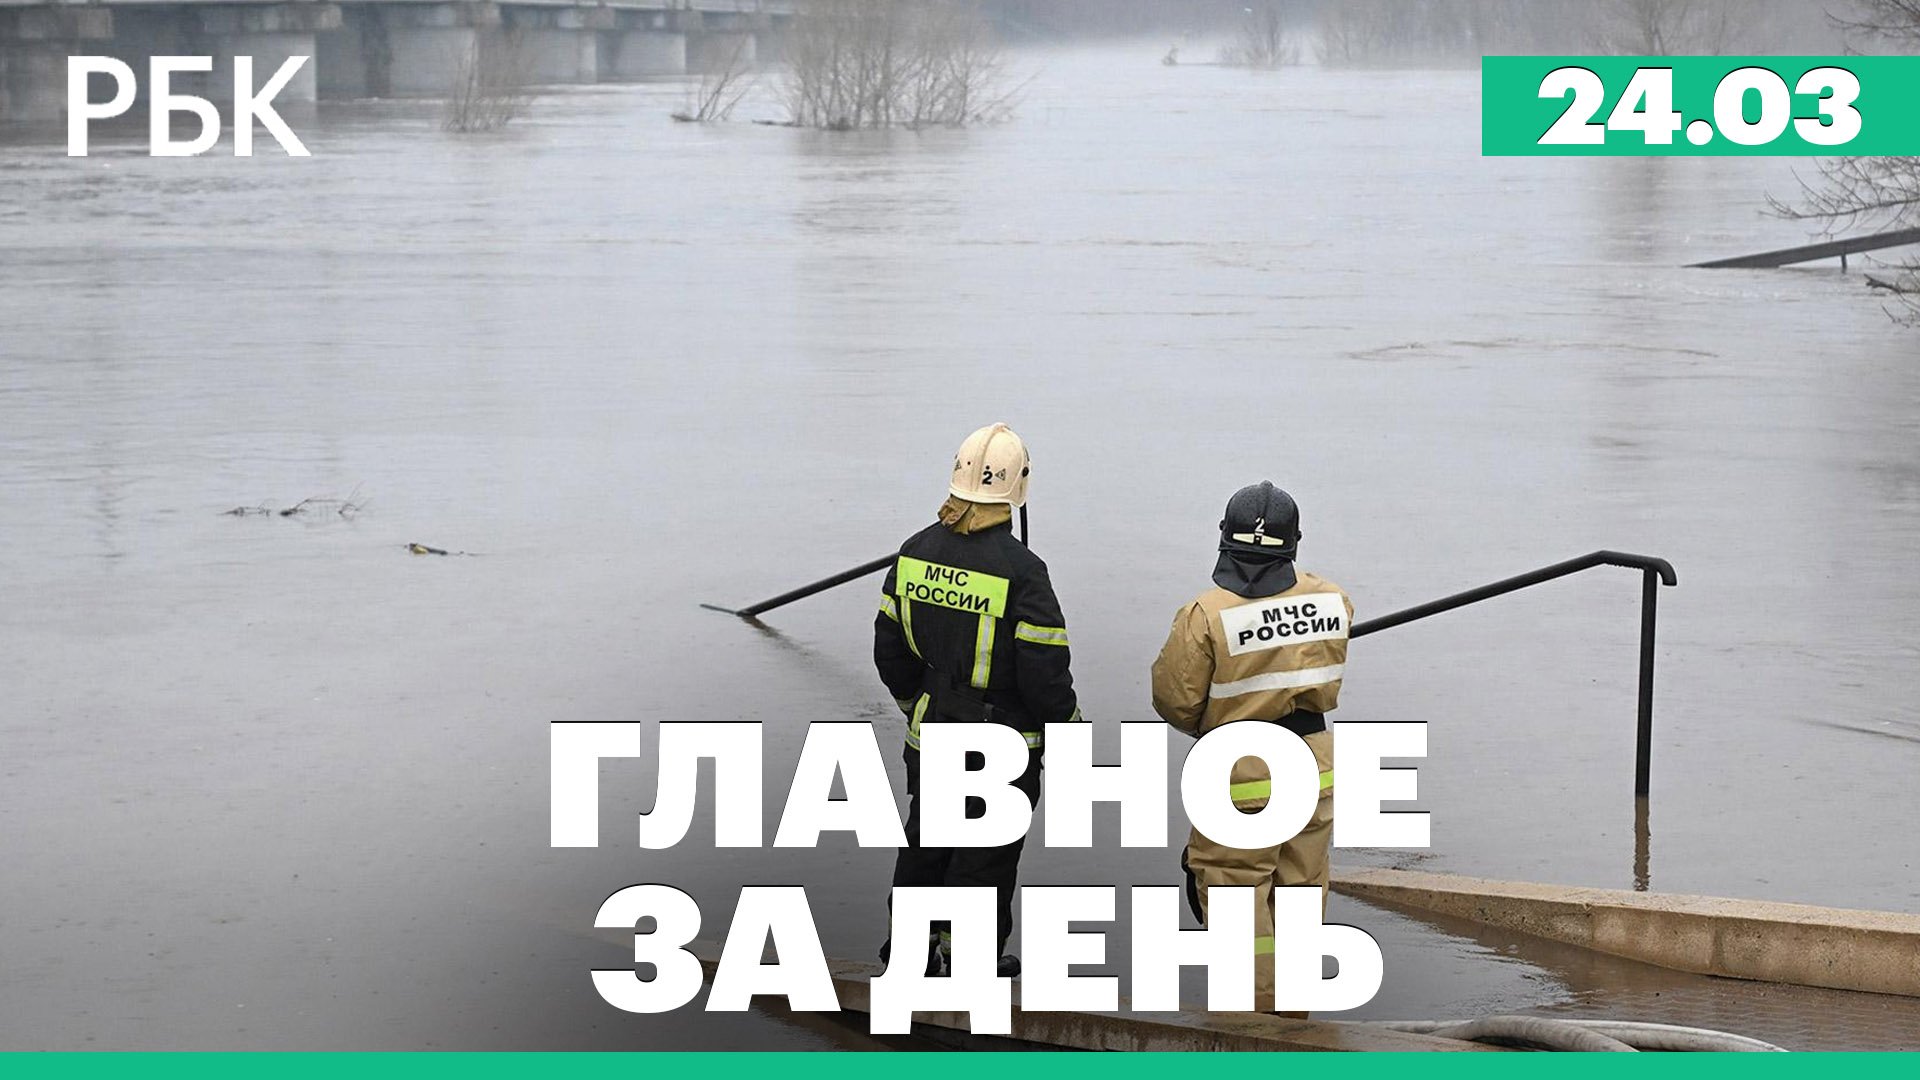 Наводнение в Оренбургской области, Набиуллина в Госдуме, НАТО об ударах по территории России